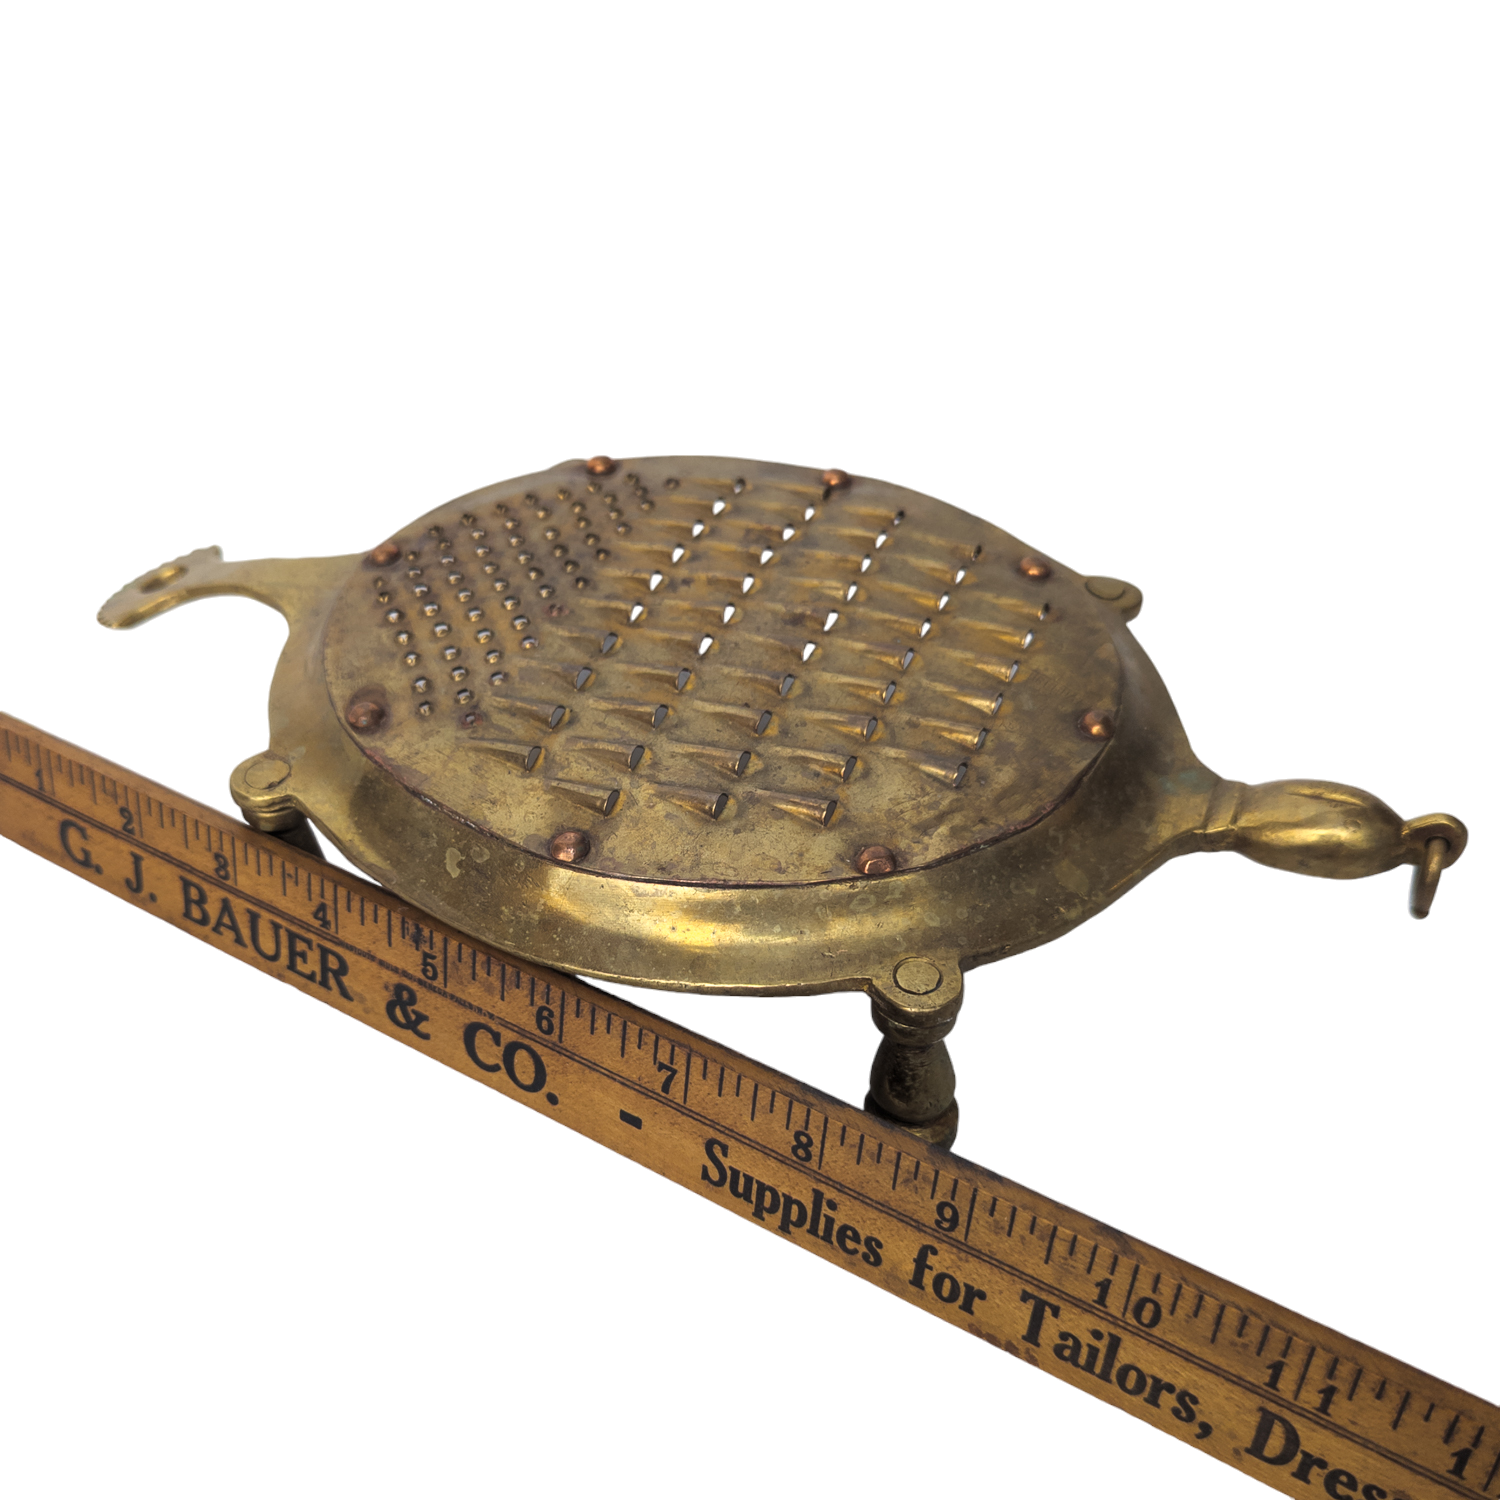 Vintage Brass Figural Turtle Food Grater